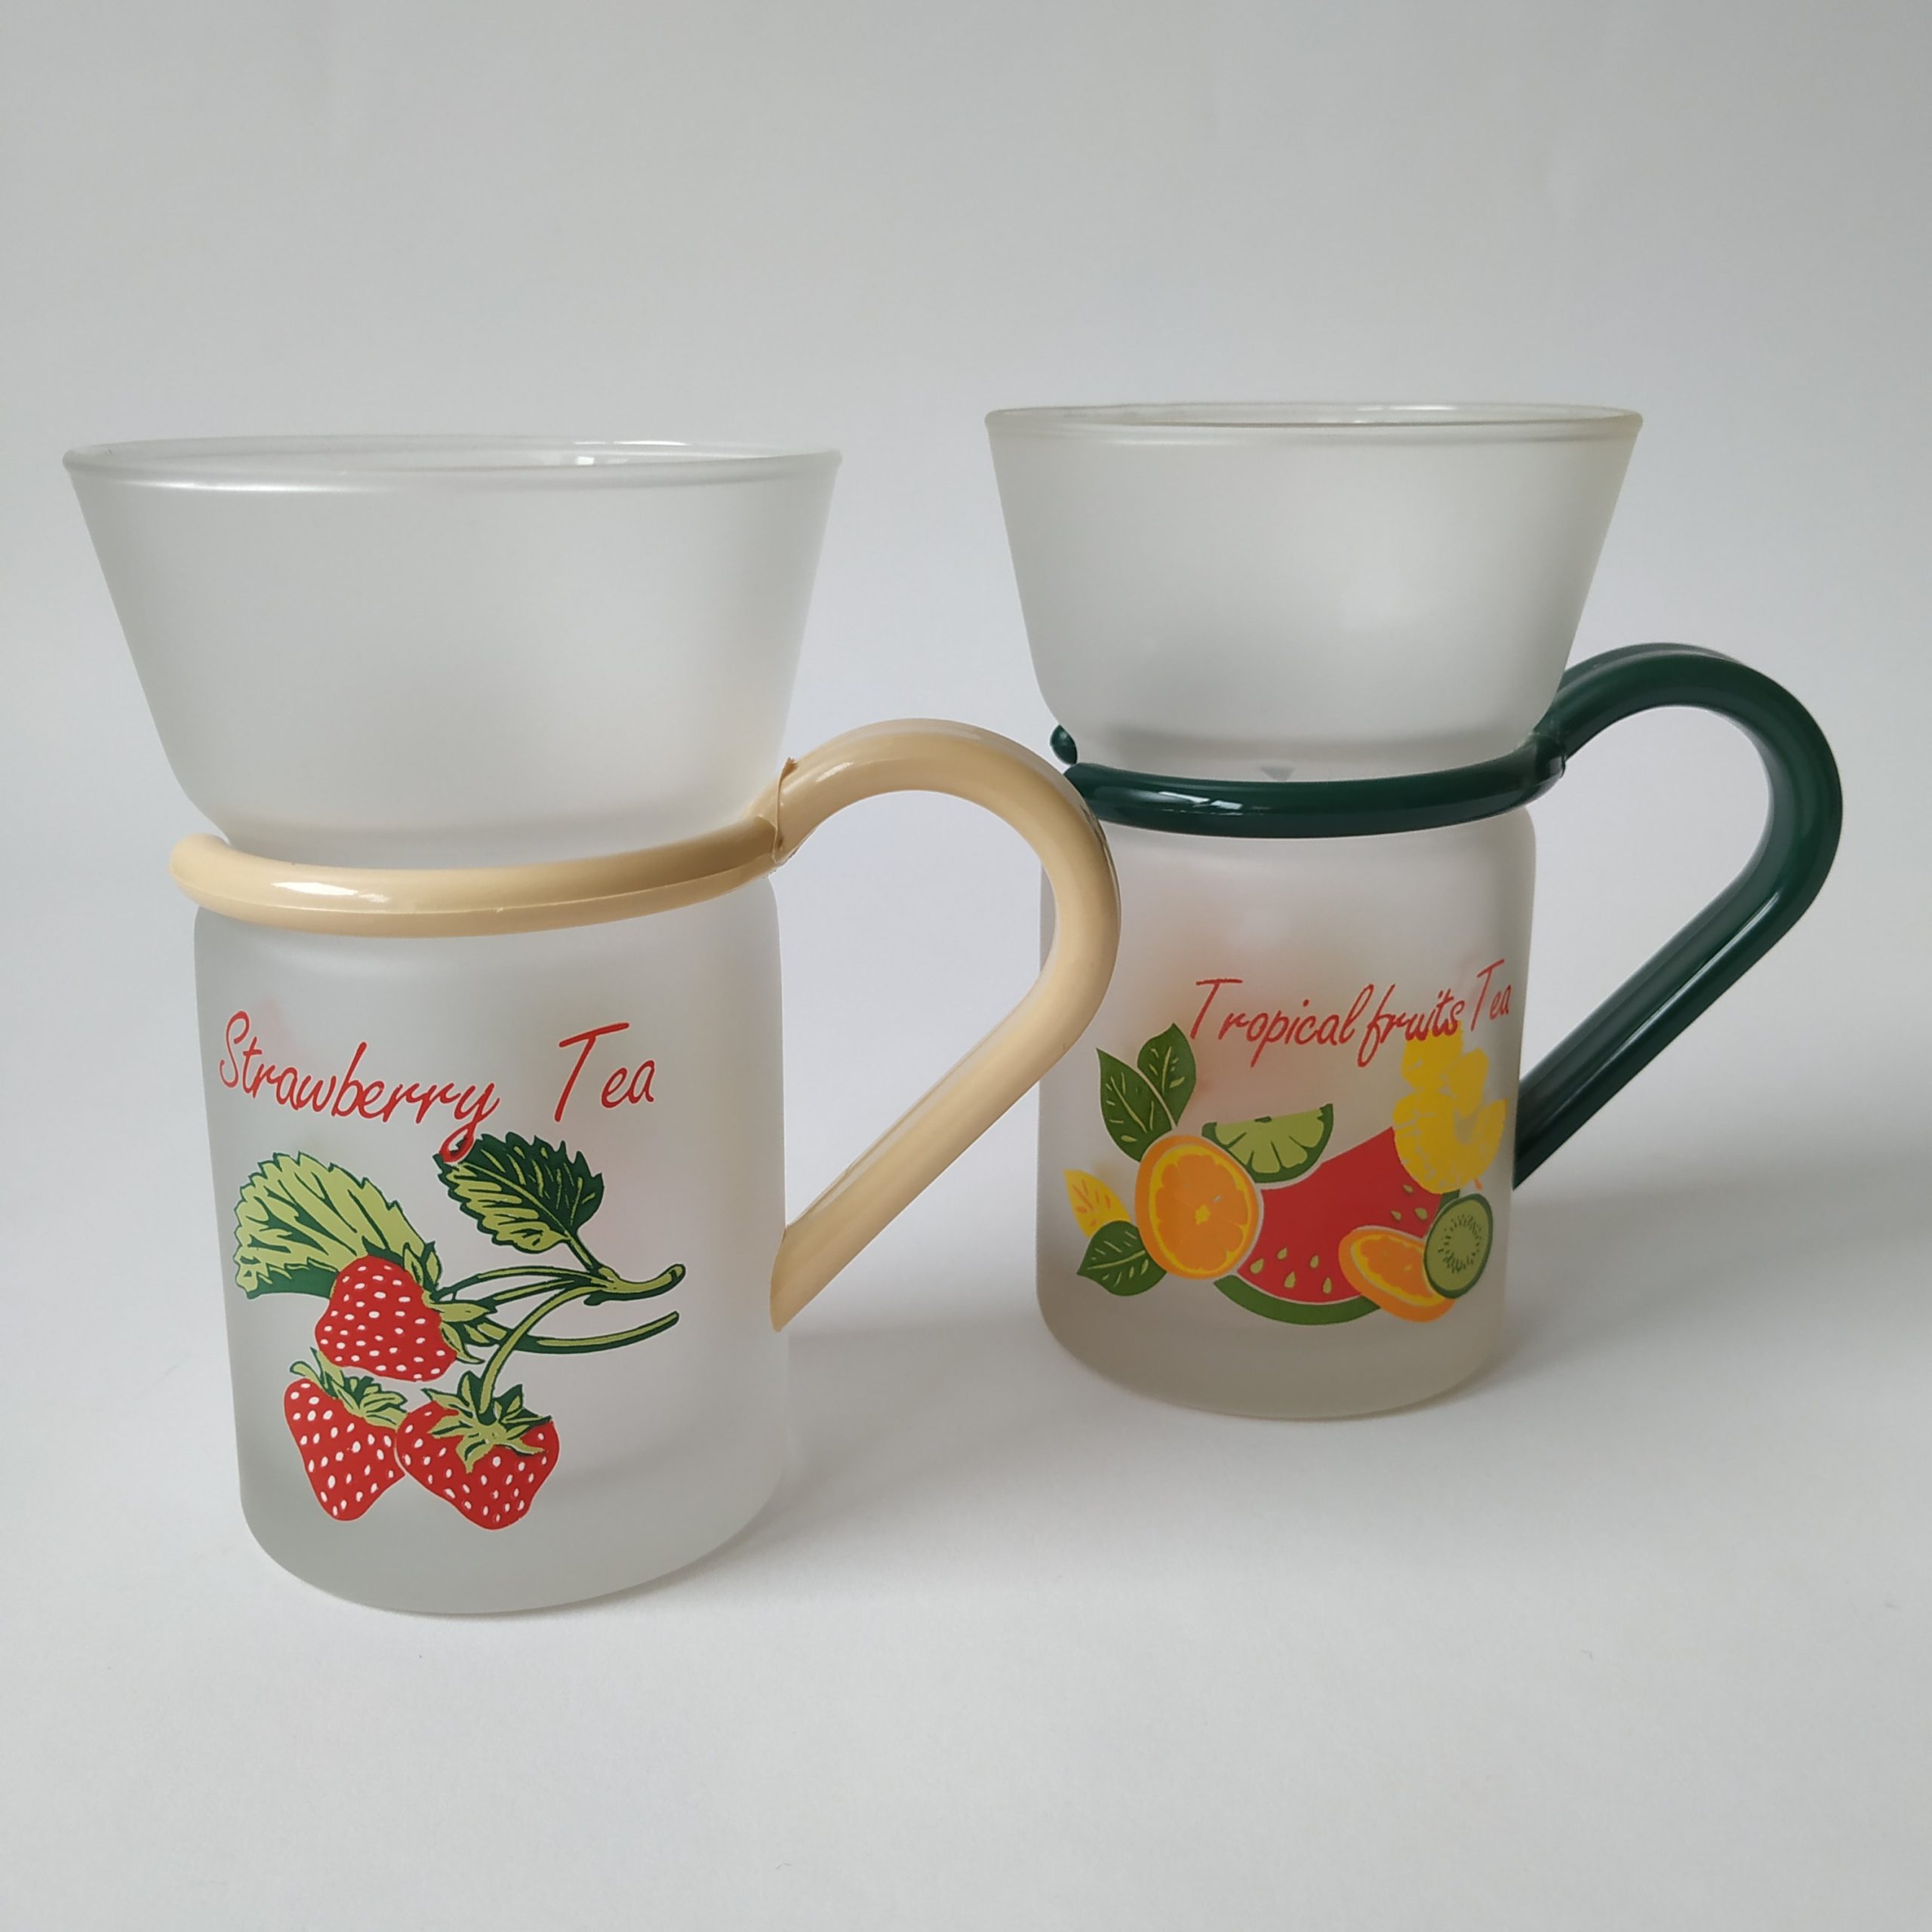 Theeglazen Inspiration – Strawberry Tea en Tropical fruits Tea – inhoud 200 ml – (1)